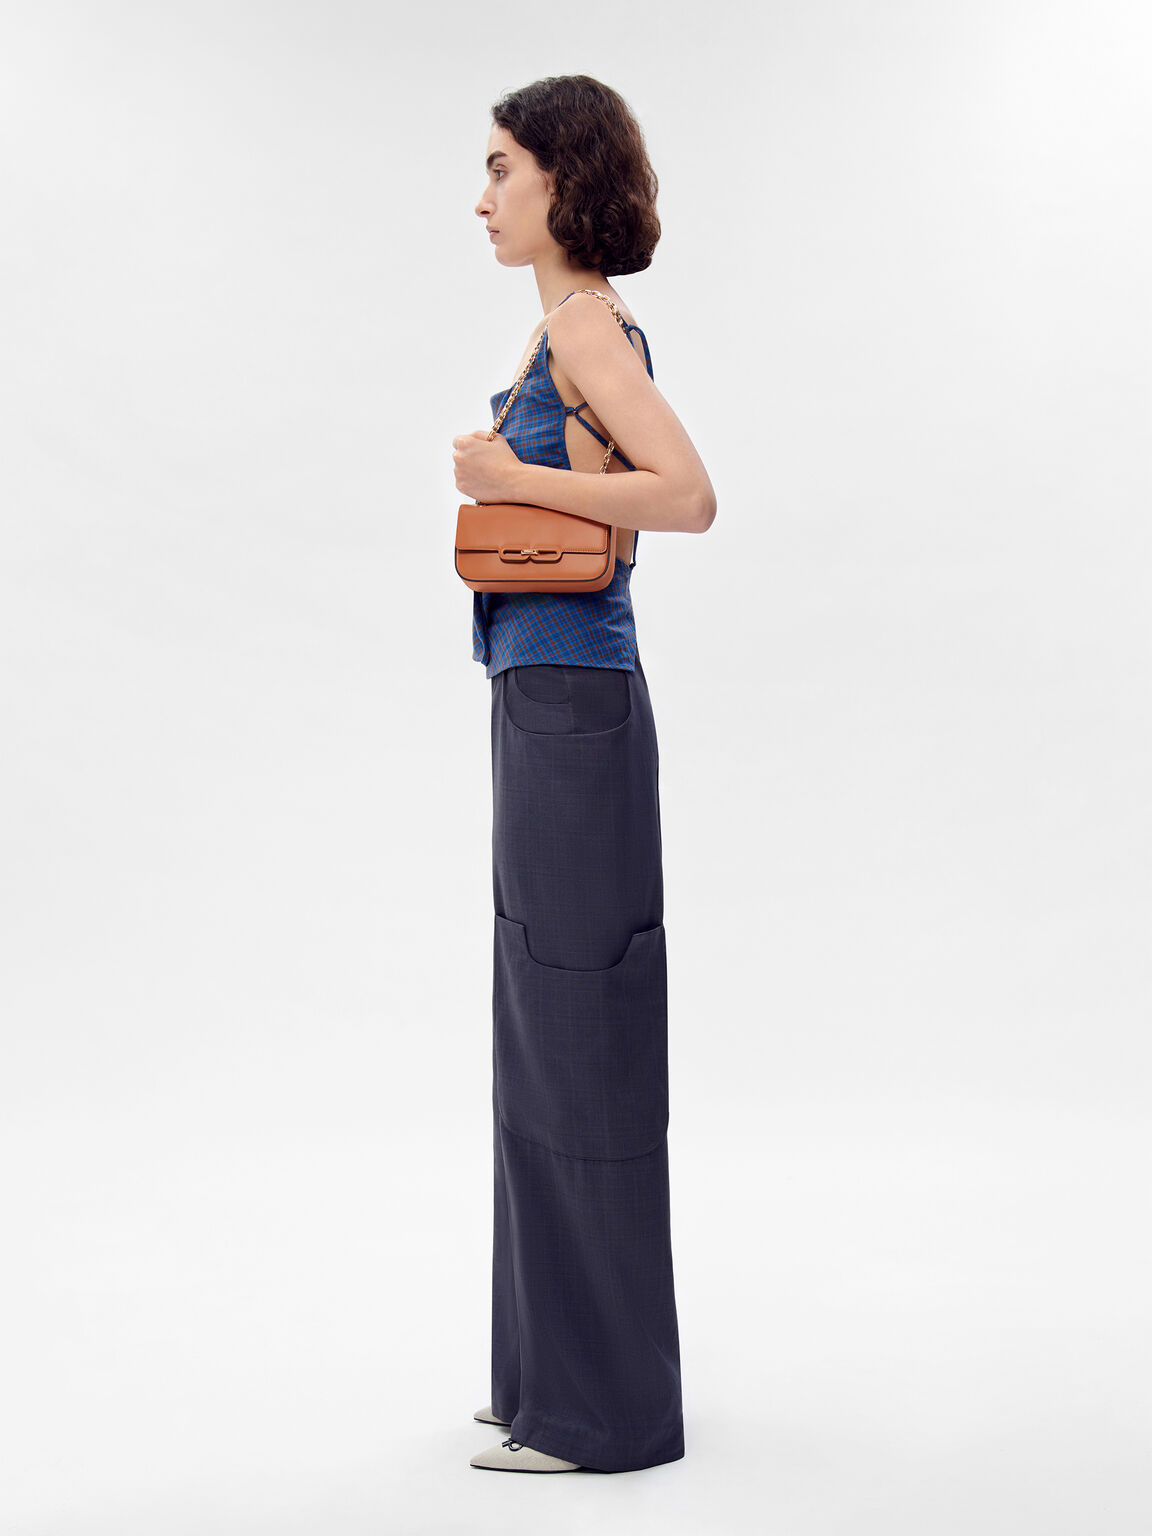 PEDRO Studio Kate Leather Shoulder Bag, Camel, hi-res